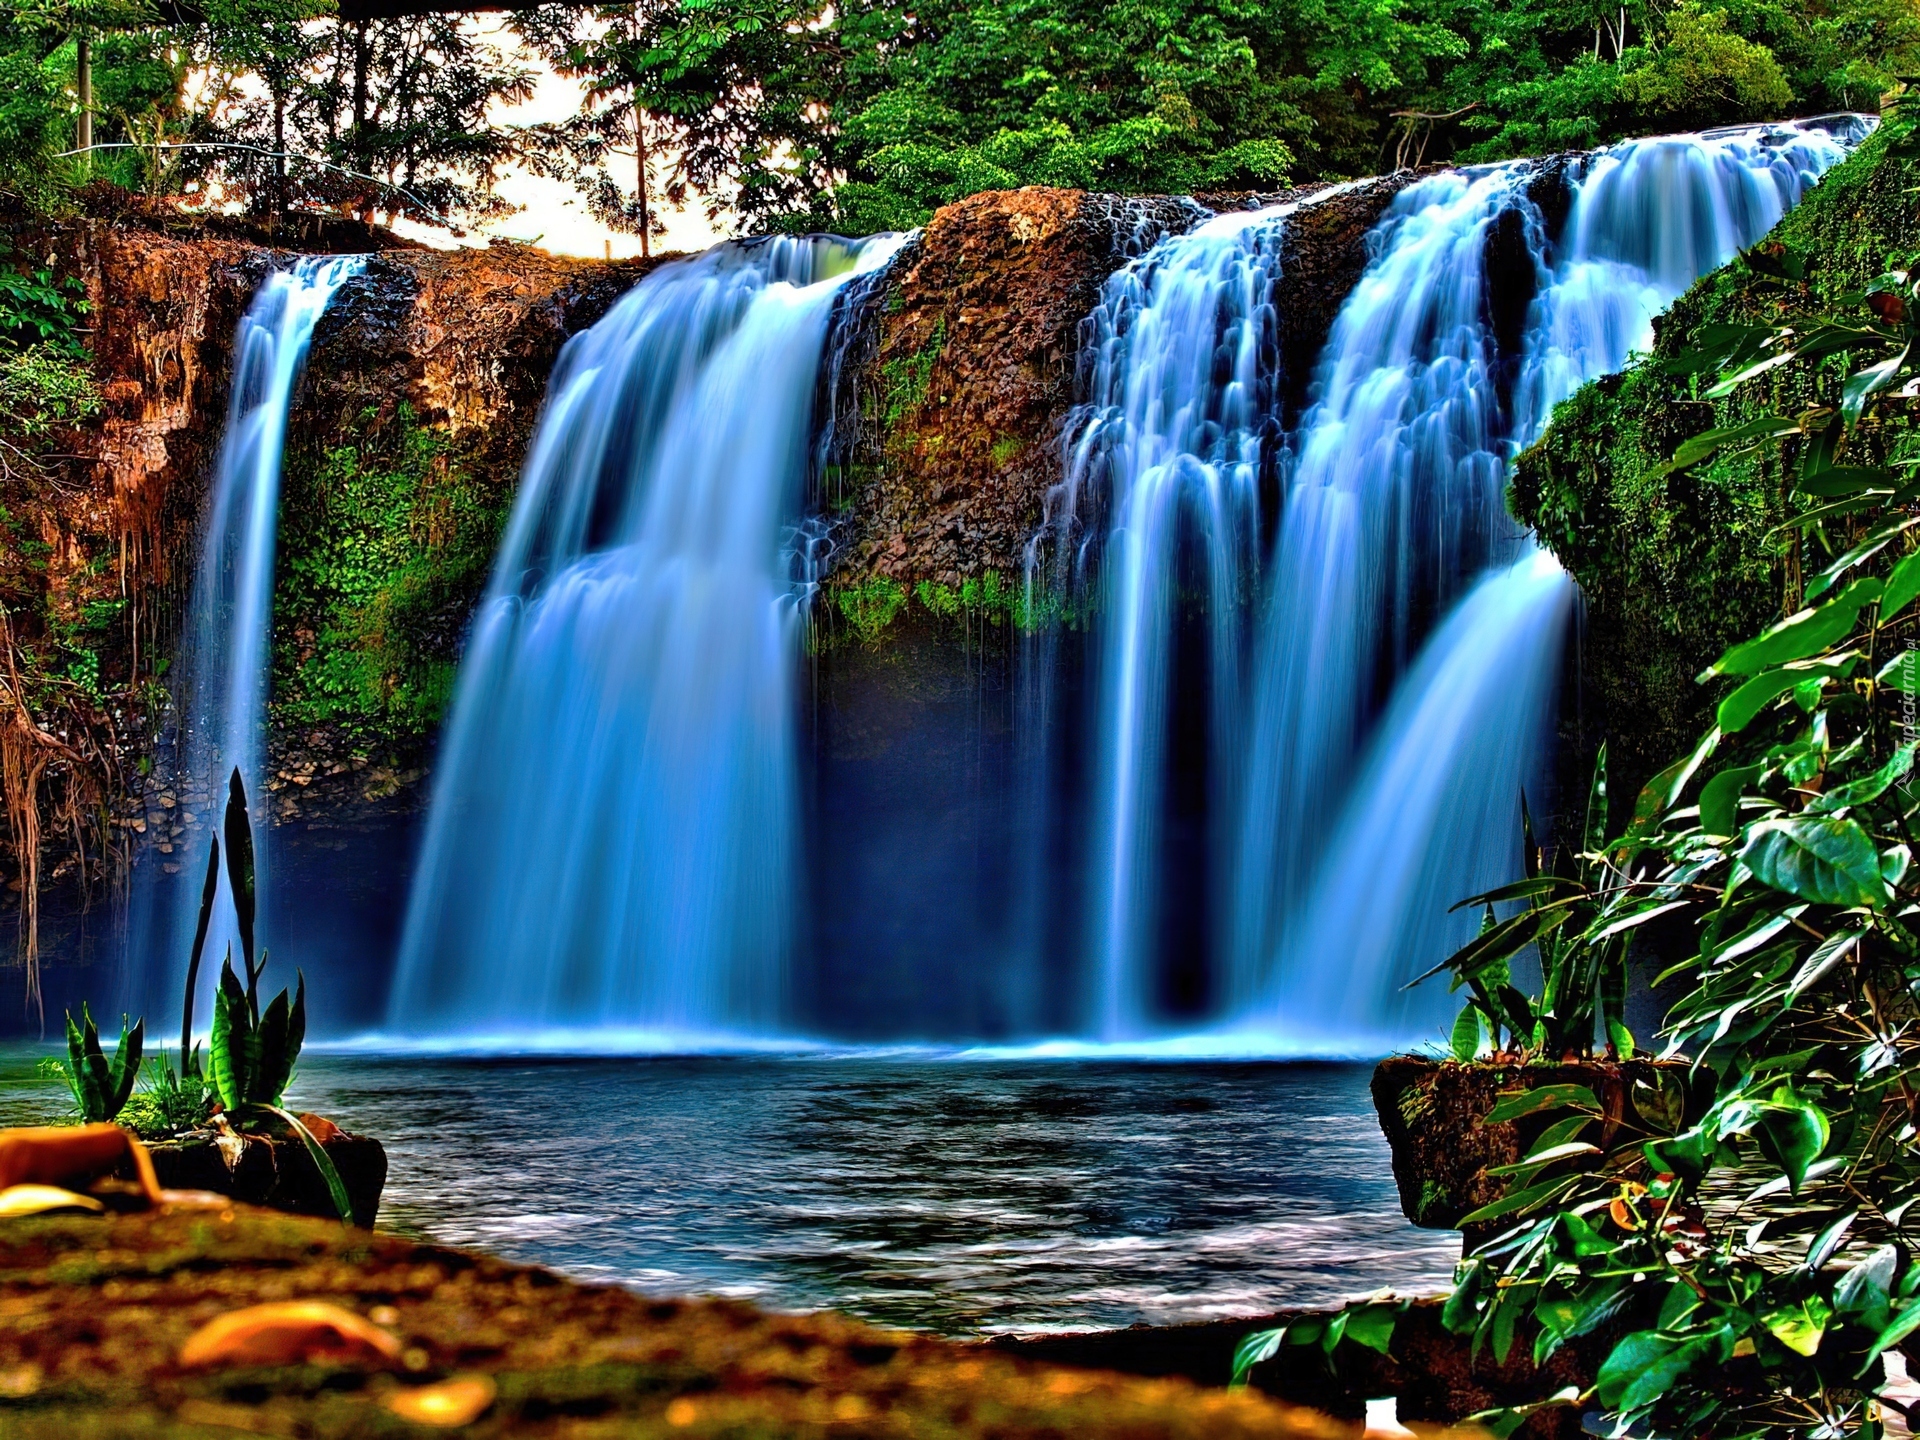 Обои красивые водопады. Красивые водопады. Картинки на рабочий стол водопад. Живая природа водопады. Обои на рабочий стол водопад.